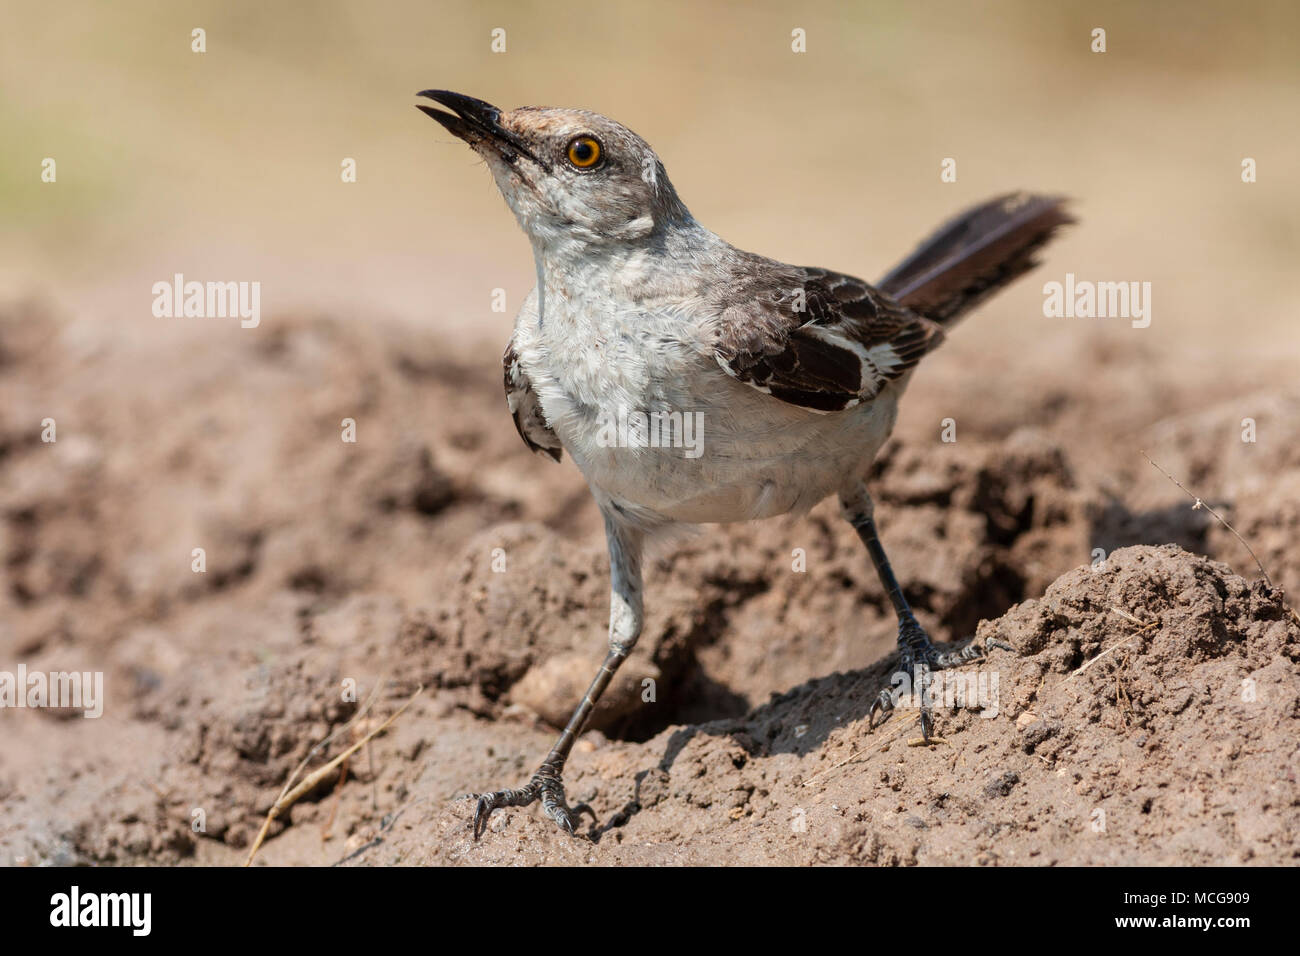 Northern Mockingbird, Mimus polyglottos, il solo mockingbird comunemente trovati in America del Nord, alla ricerca di acqua e sollievo dal caldo estivo. Foto Stock